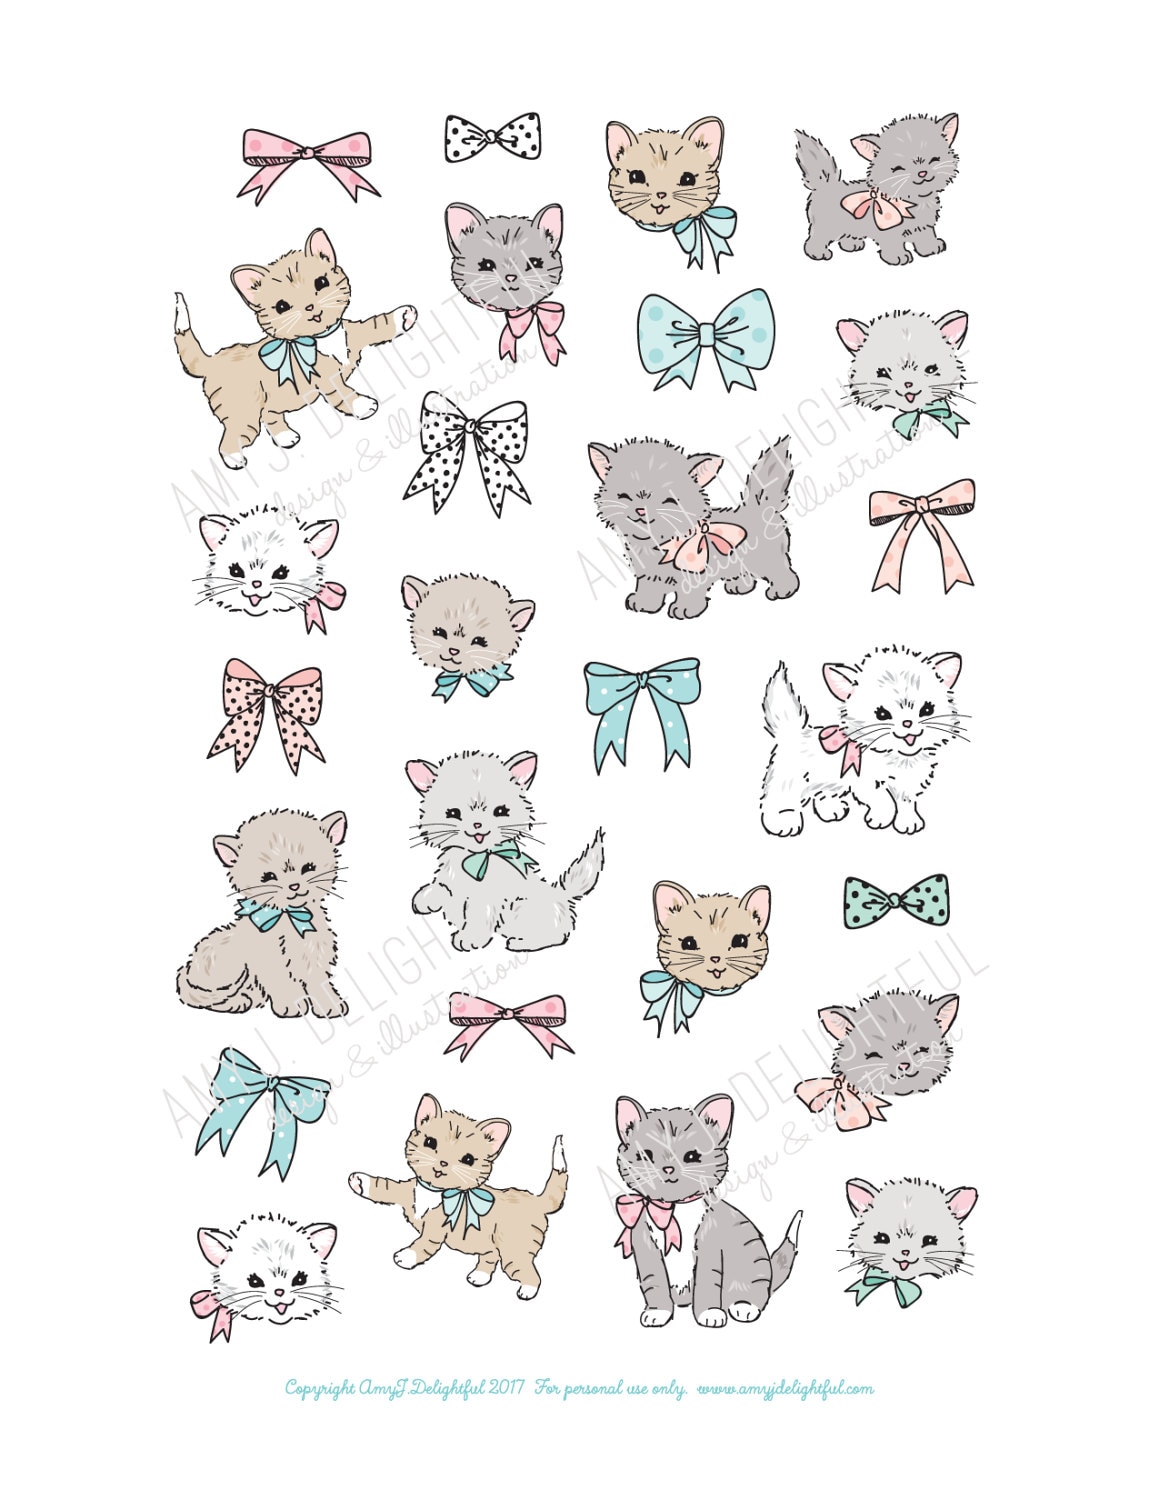 Free printable cat planner stickers - ausdruckbare Katzensticker - freebie